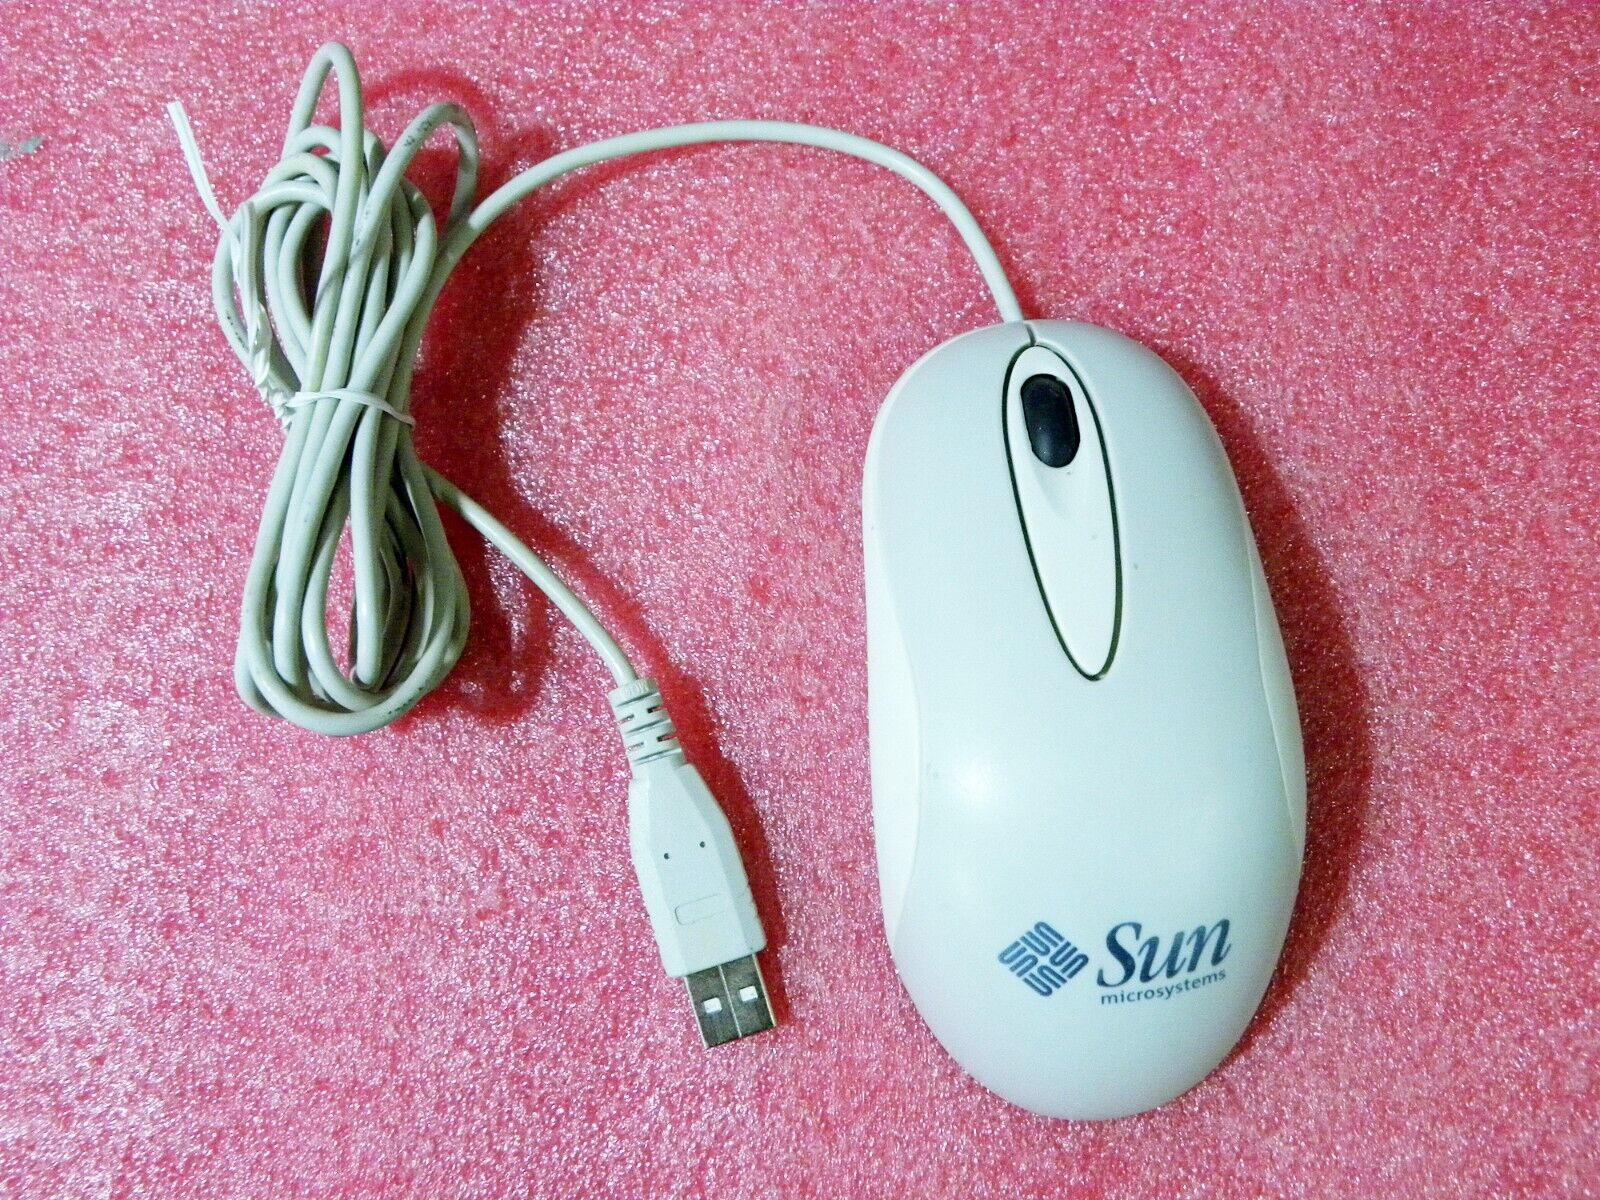 Sun Microsystems FID-638 USB Optical SCROLL Mouse 371-0788-01